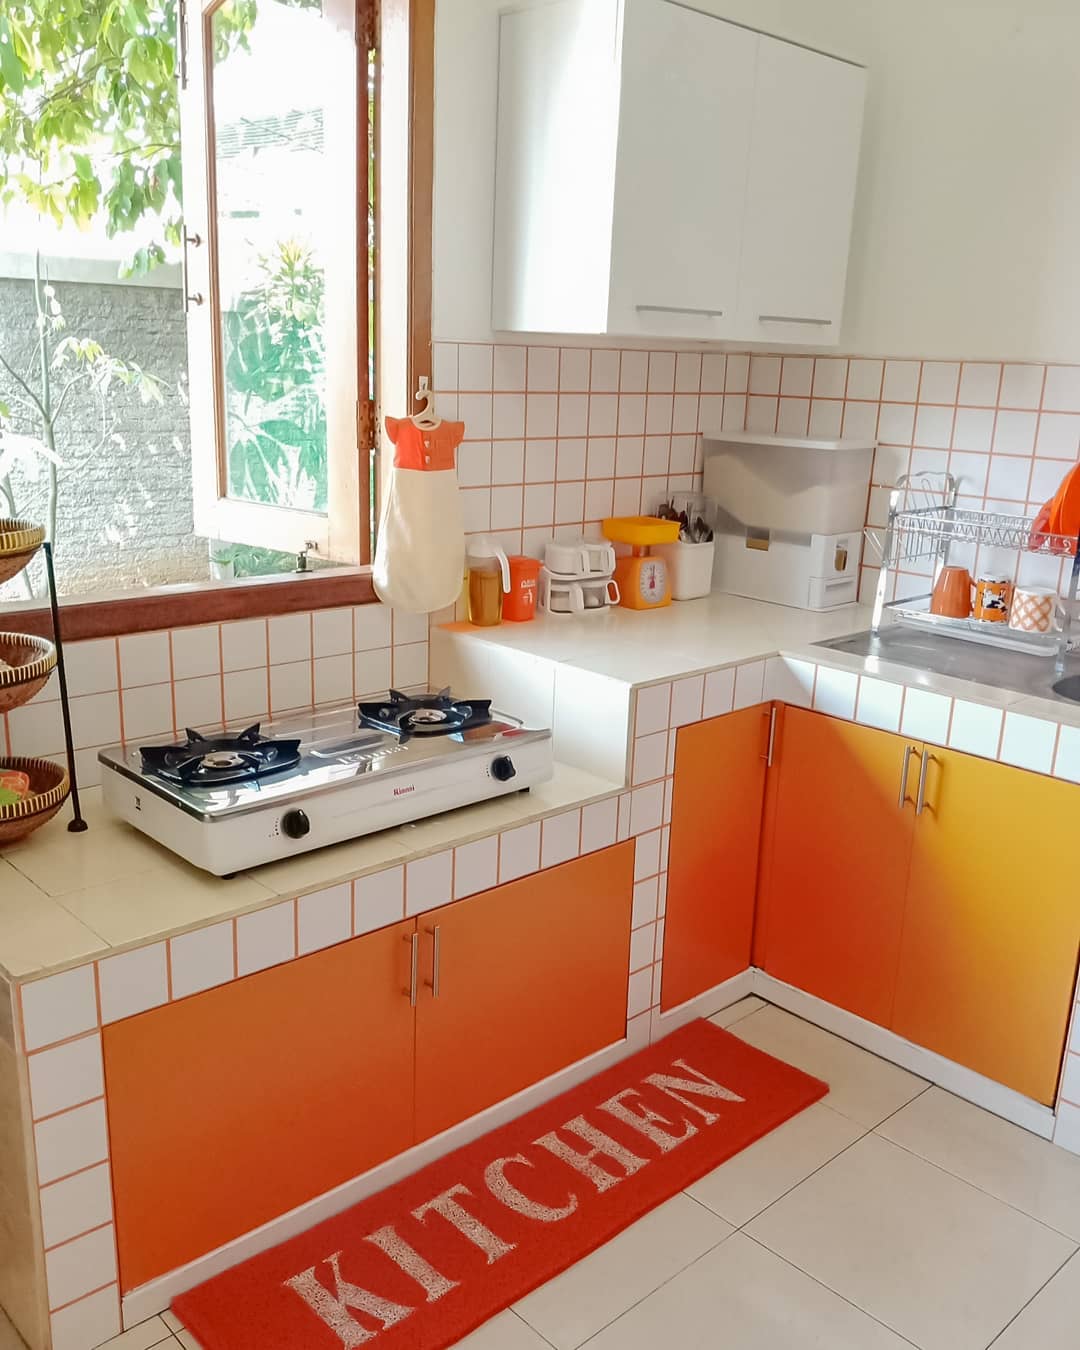 Kumpulan Contoh Model Desain Dapur Sederhana Di Lahan Yang Terbatas Homeshabbycom Design Home Plans